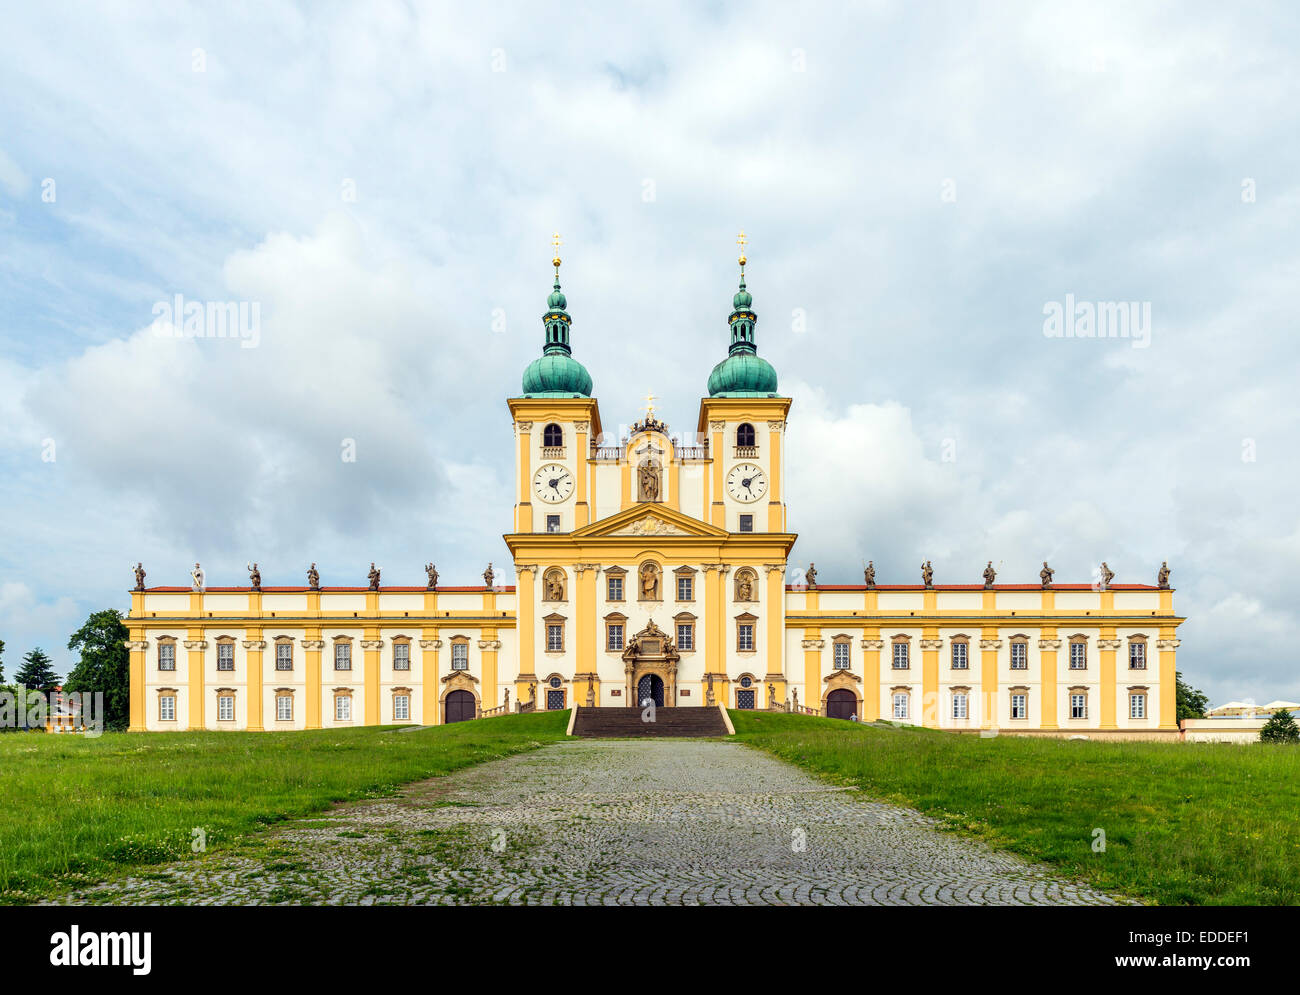 Premonstrate monasterio con la Basílica de la Anunciación, Svatý Kopecek o monte santo, Olomouc, República Checa Foto de stock